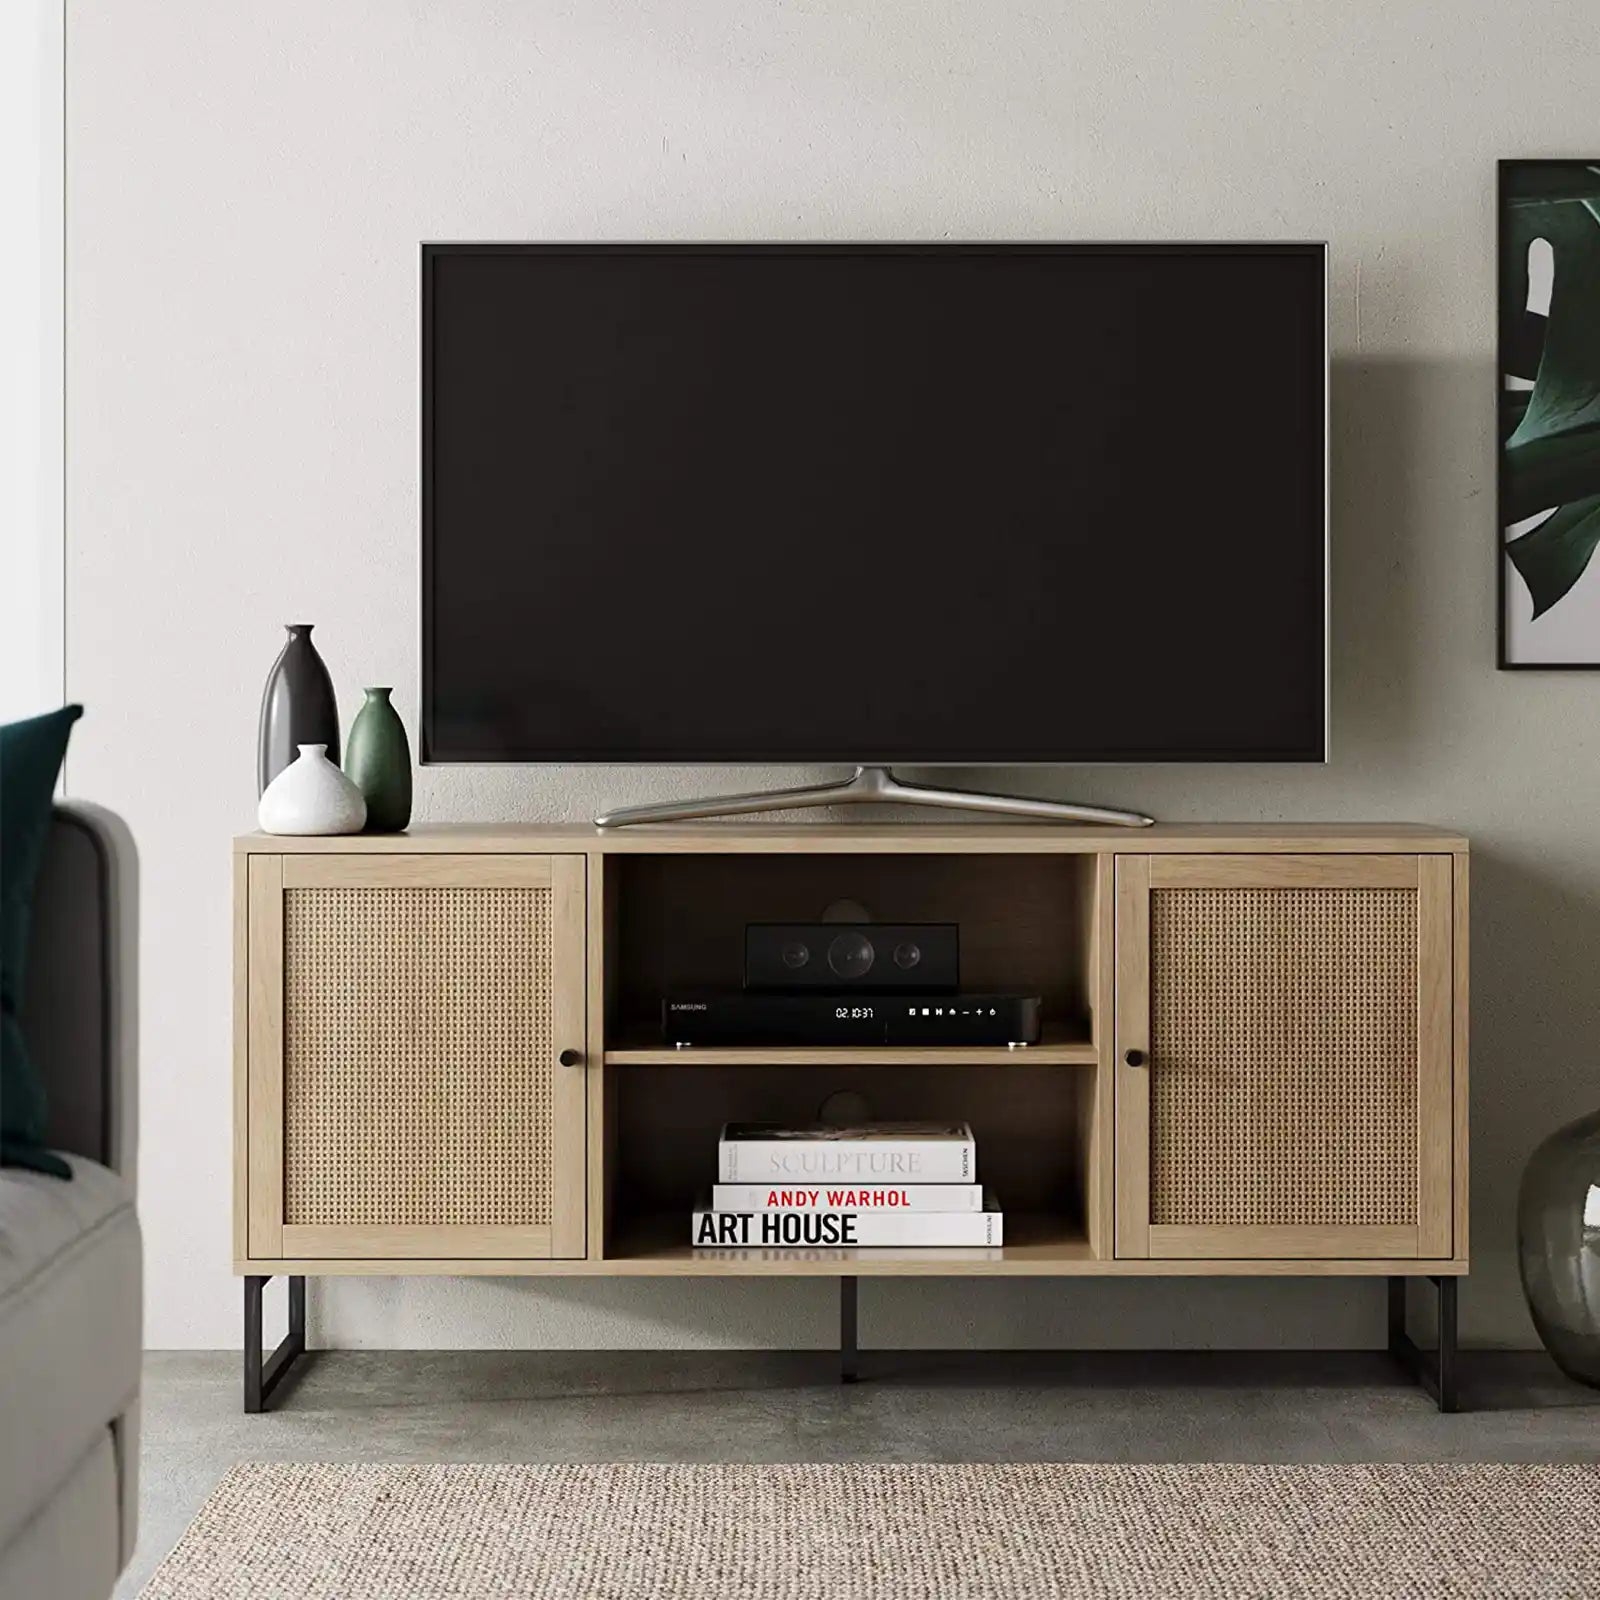 Mueble de entretenimiento con soporte para TV Boho moderno, consola